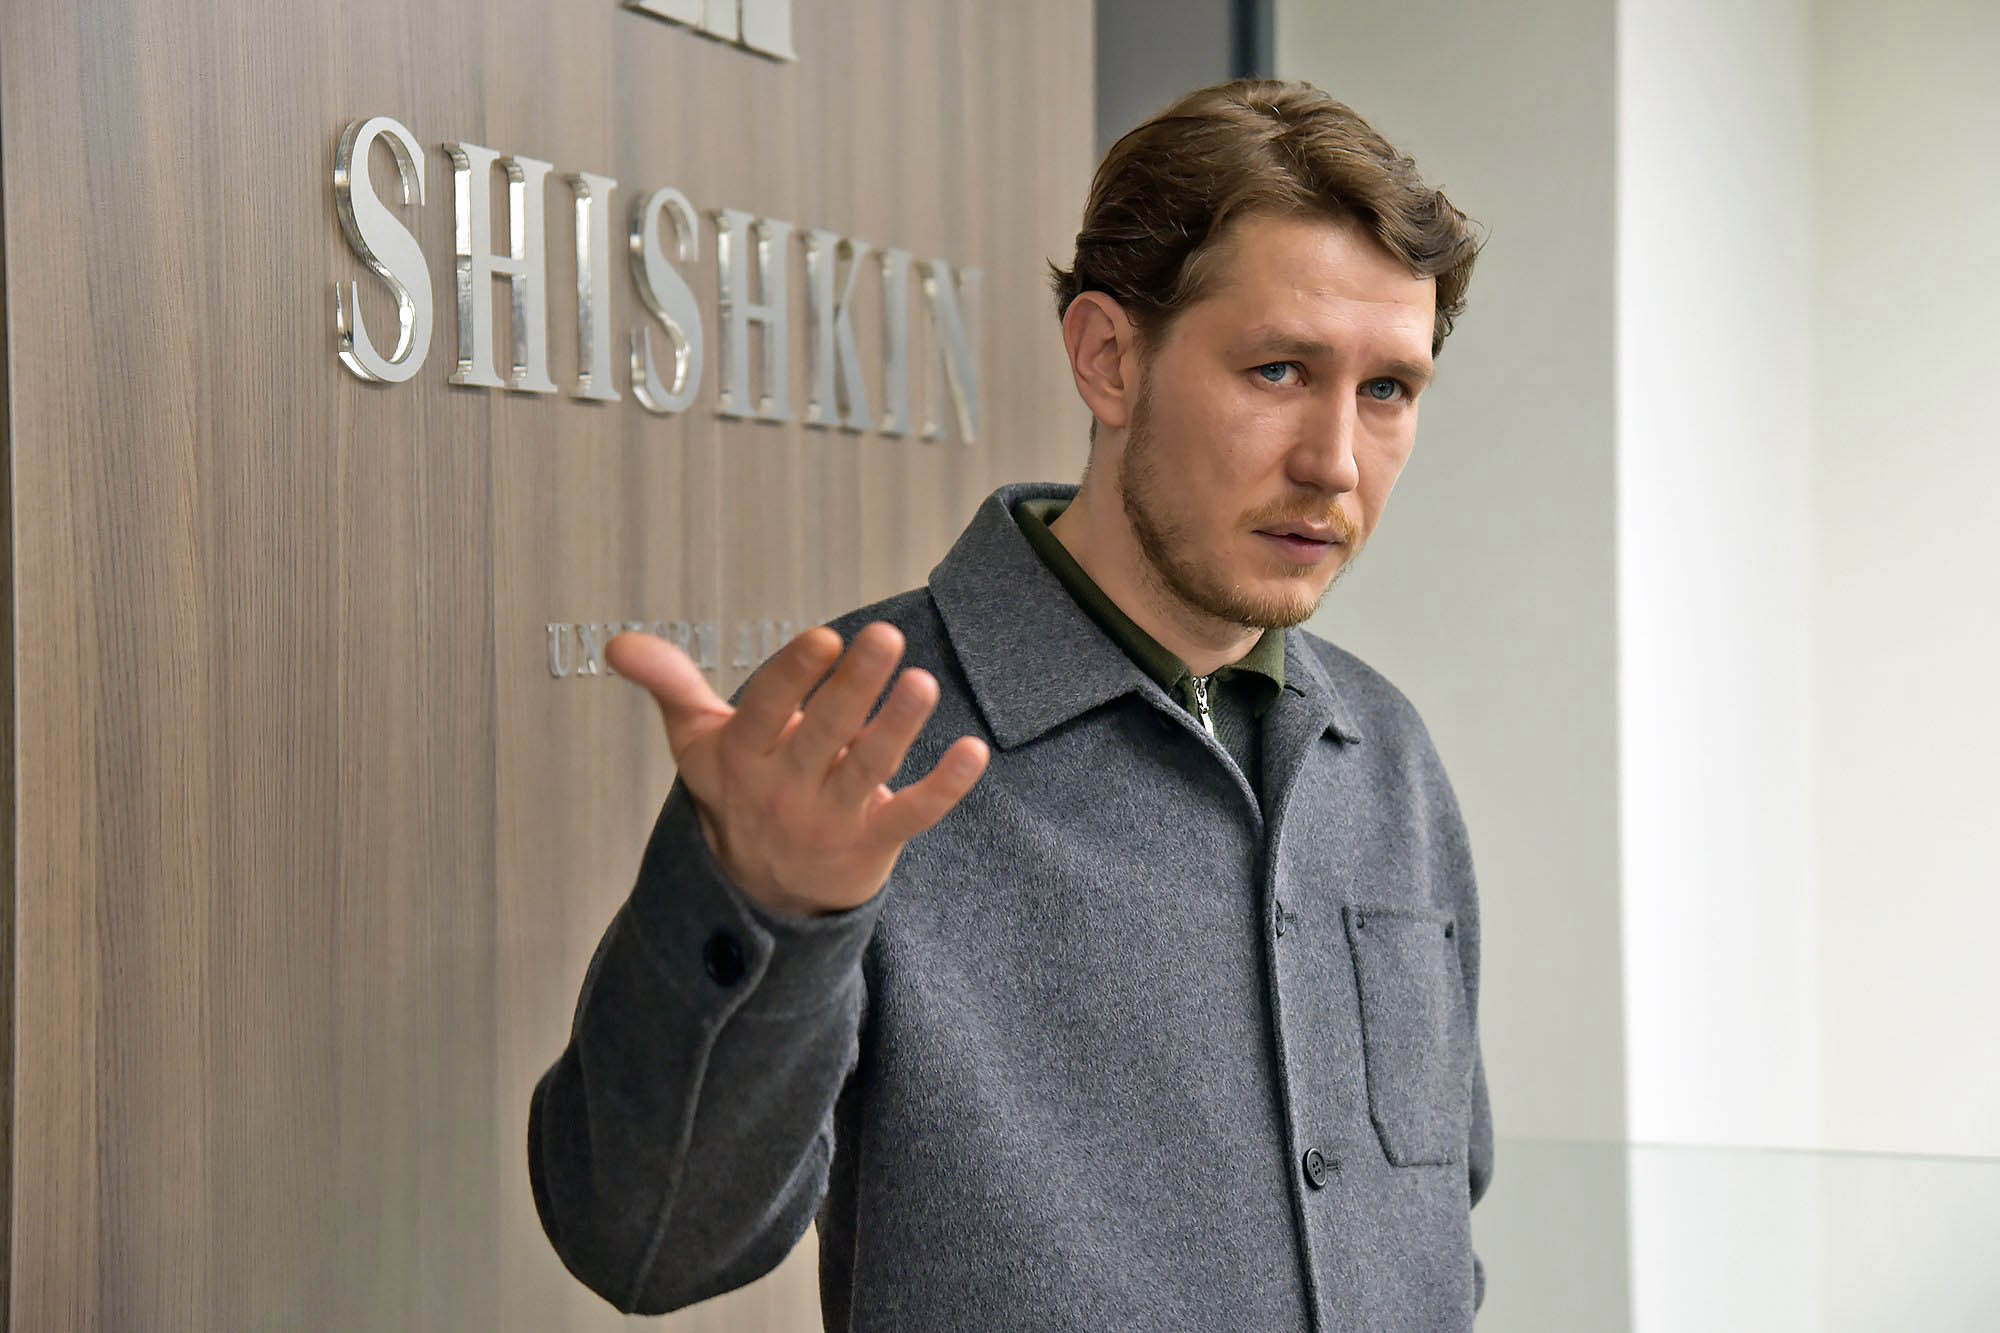 Шишкин Дмитрий Олегович – Глава группы компаний 